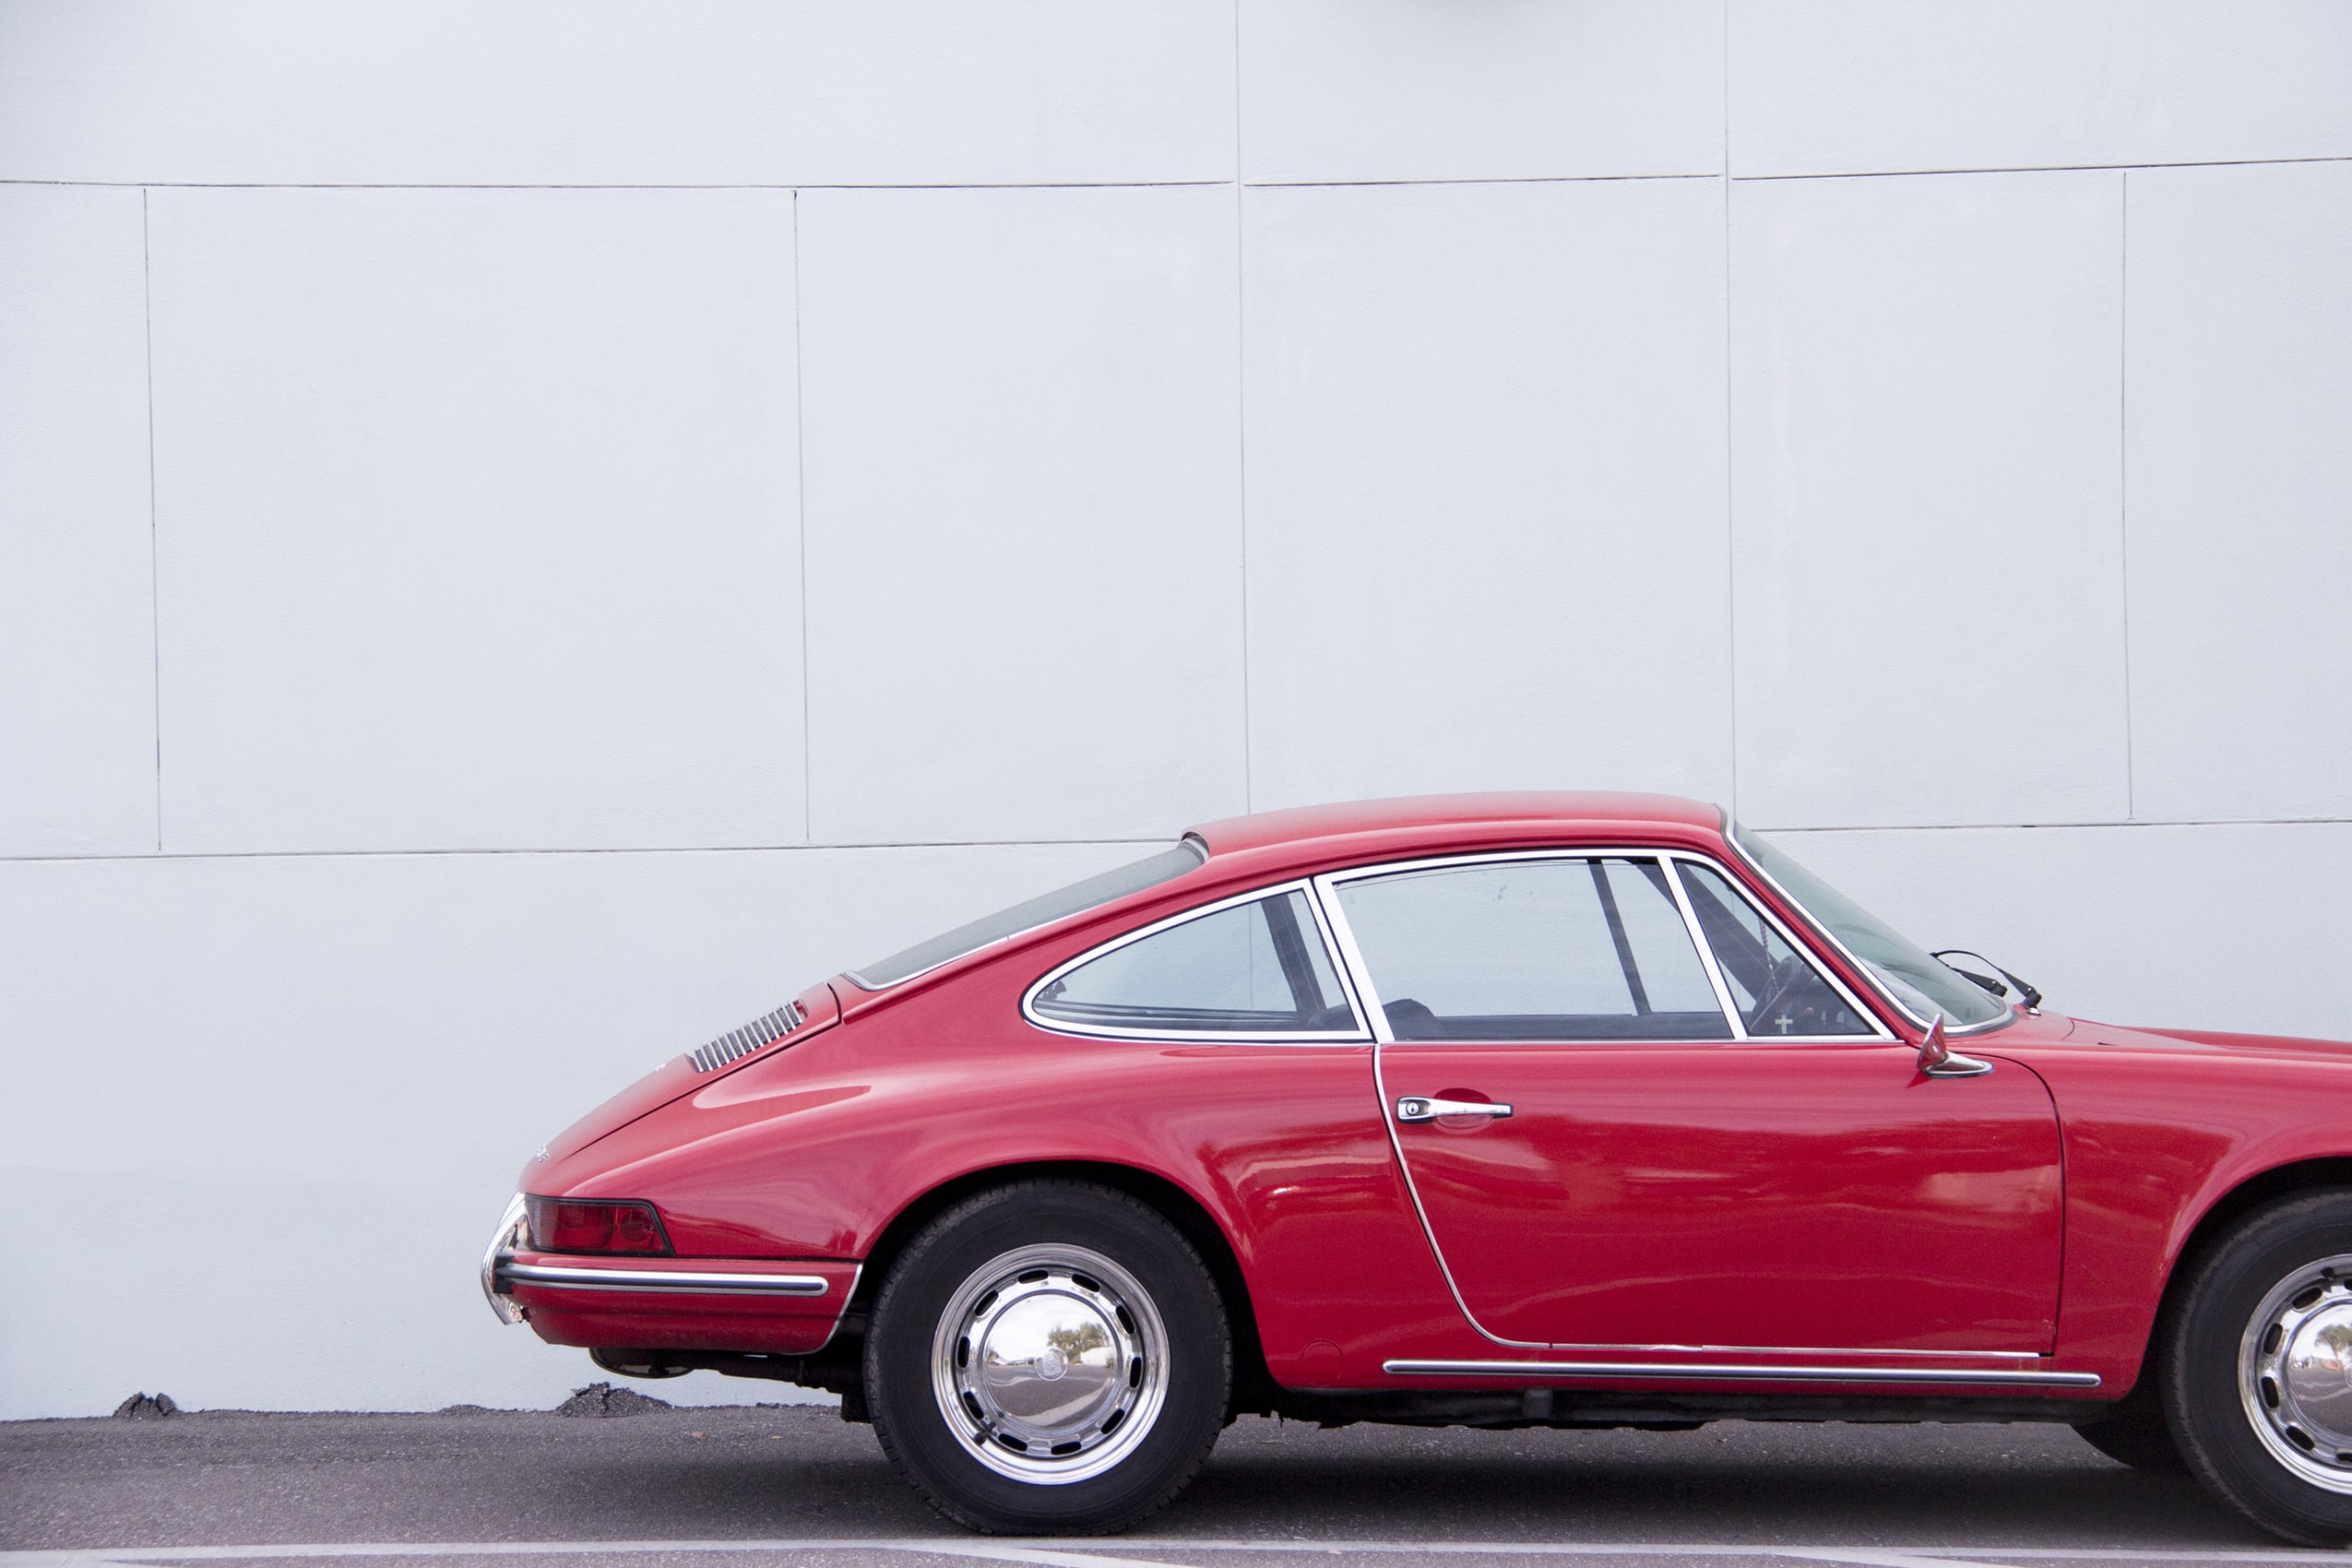 Classic Red Porsche Car